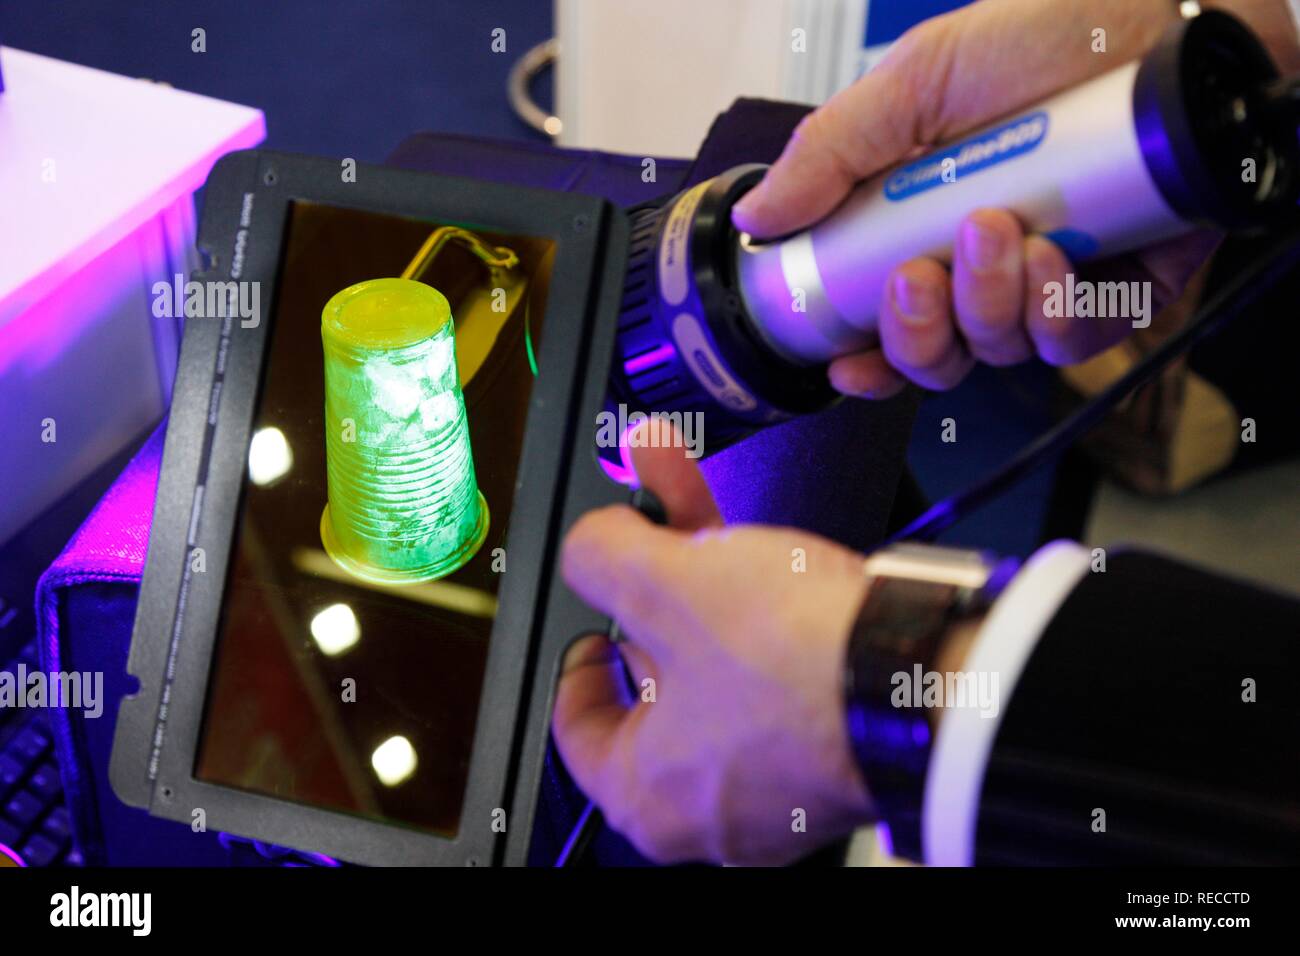 La visualisation des empreintes digitales et autres traces de fluides corporels à l'aide de rayons UV et un filtre couleur, IPOMEX, Banque D'Images